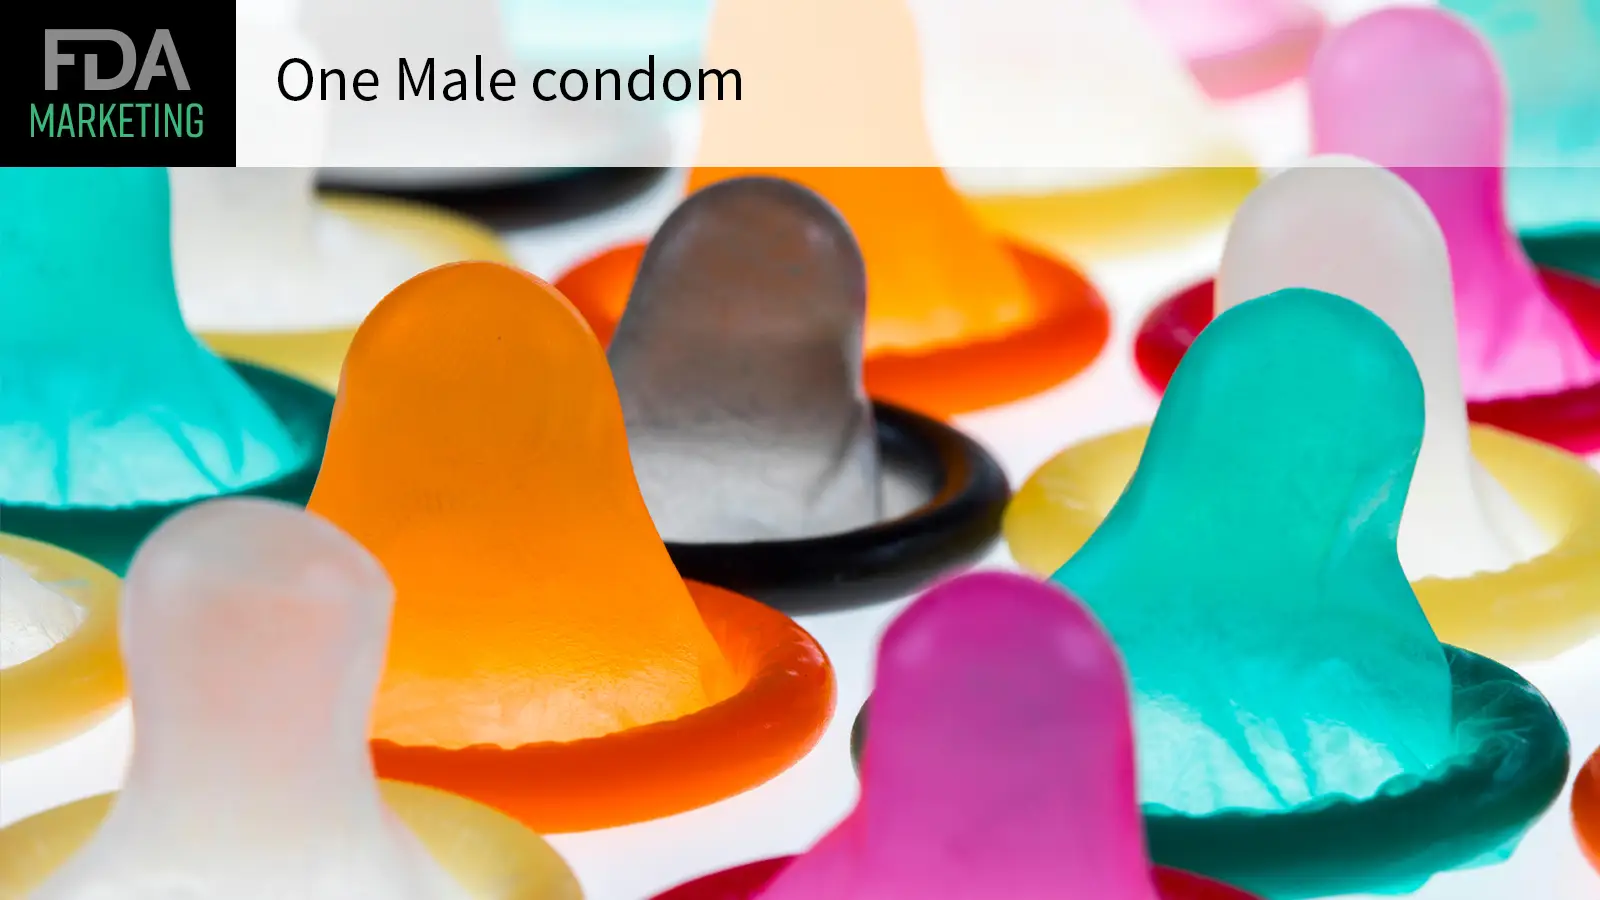 La FDA autoriza el primer condón para el coito anal